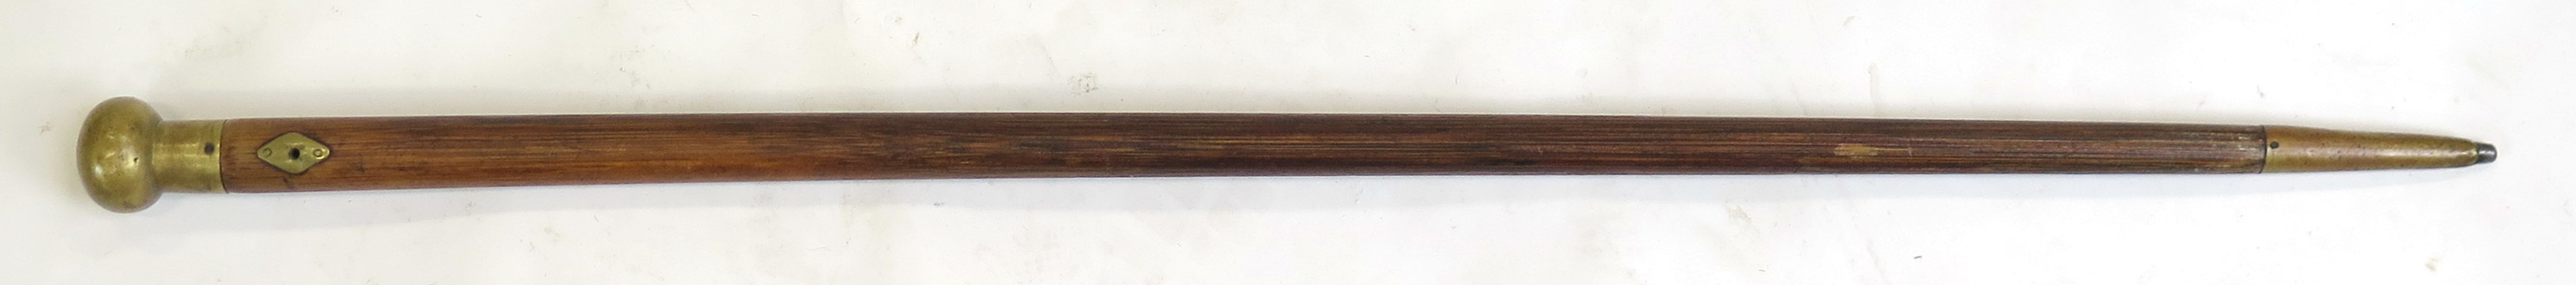 Käpp, trä med mässingbeslag, 1800-talets mitt, _10045a_lg.jpeg